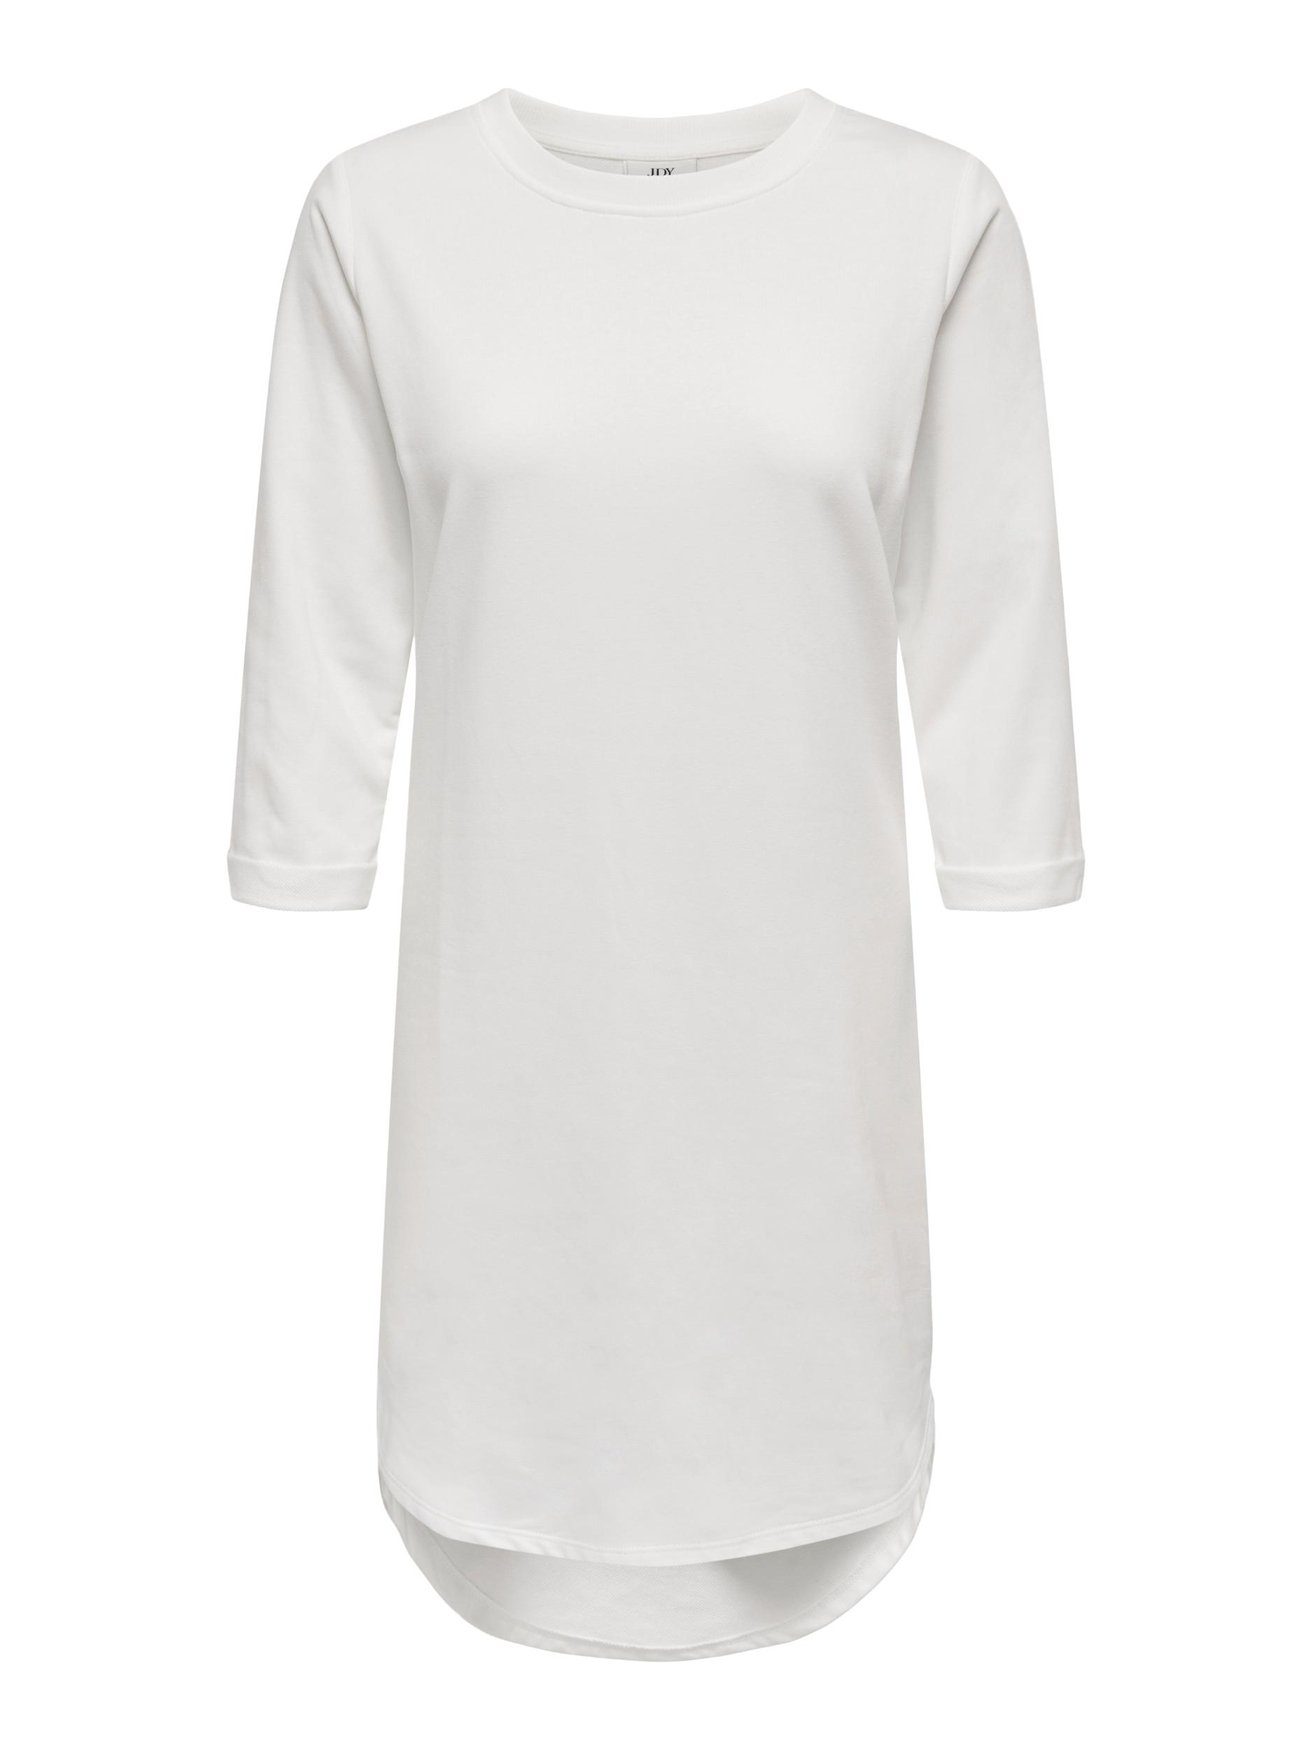 JACQUELINE de Kleid JDYIVY Shirtkleid Sweat 3/4 Weiß-3 5608 (knielang) Rundhals Arm YONG in